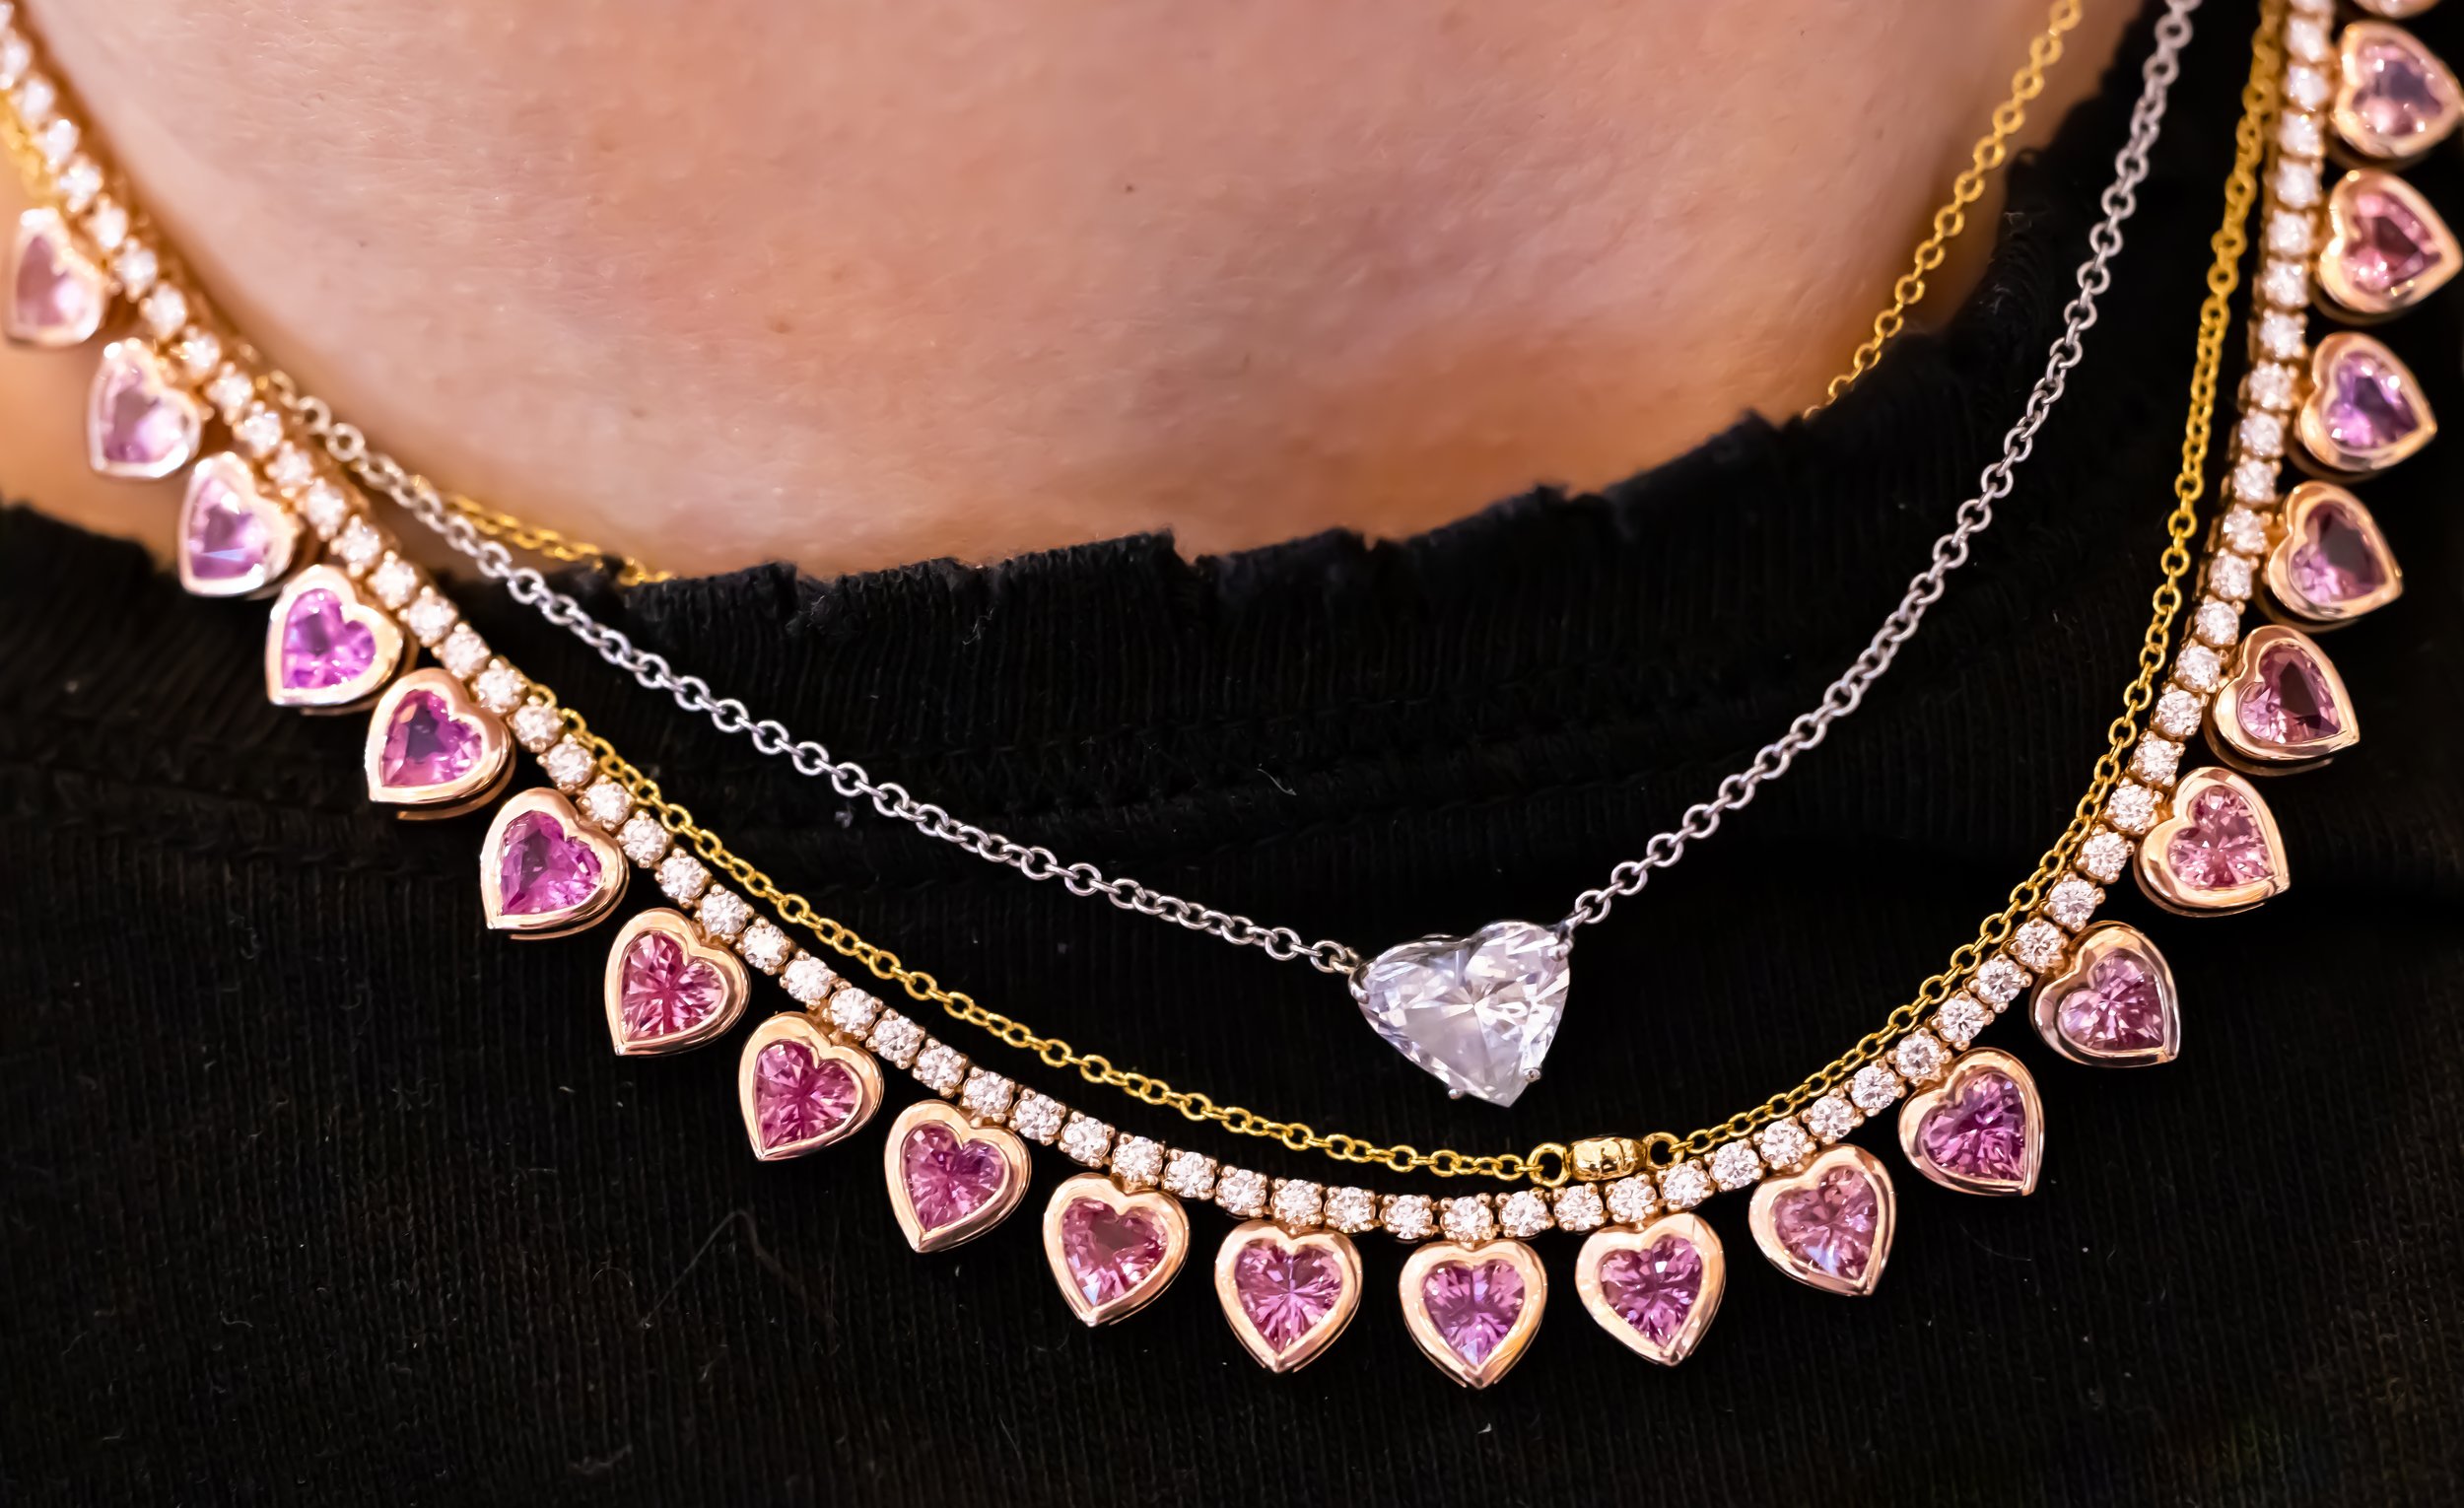 Bride necklace, $48,000 at Emily P. Wheeler